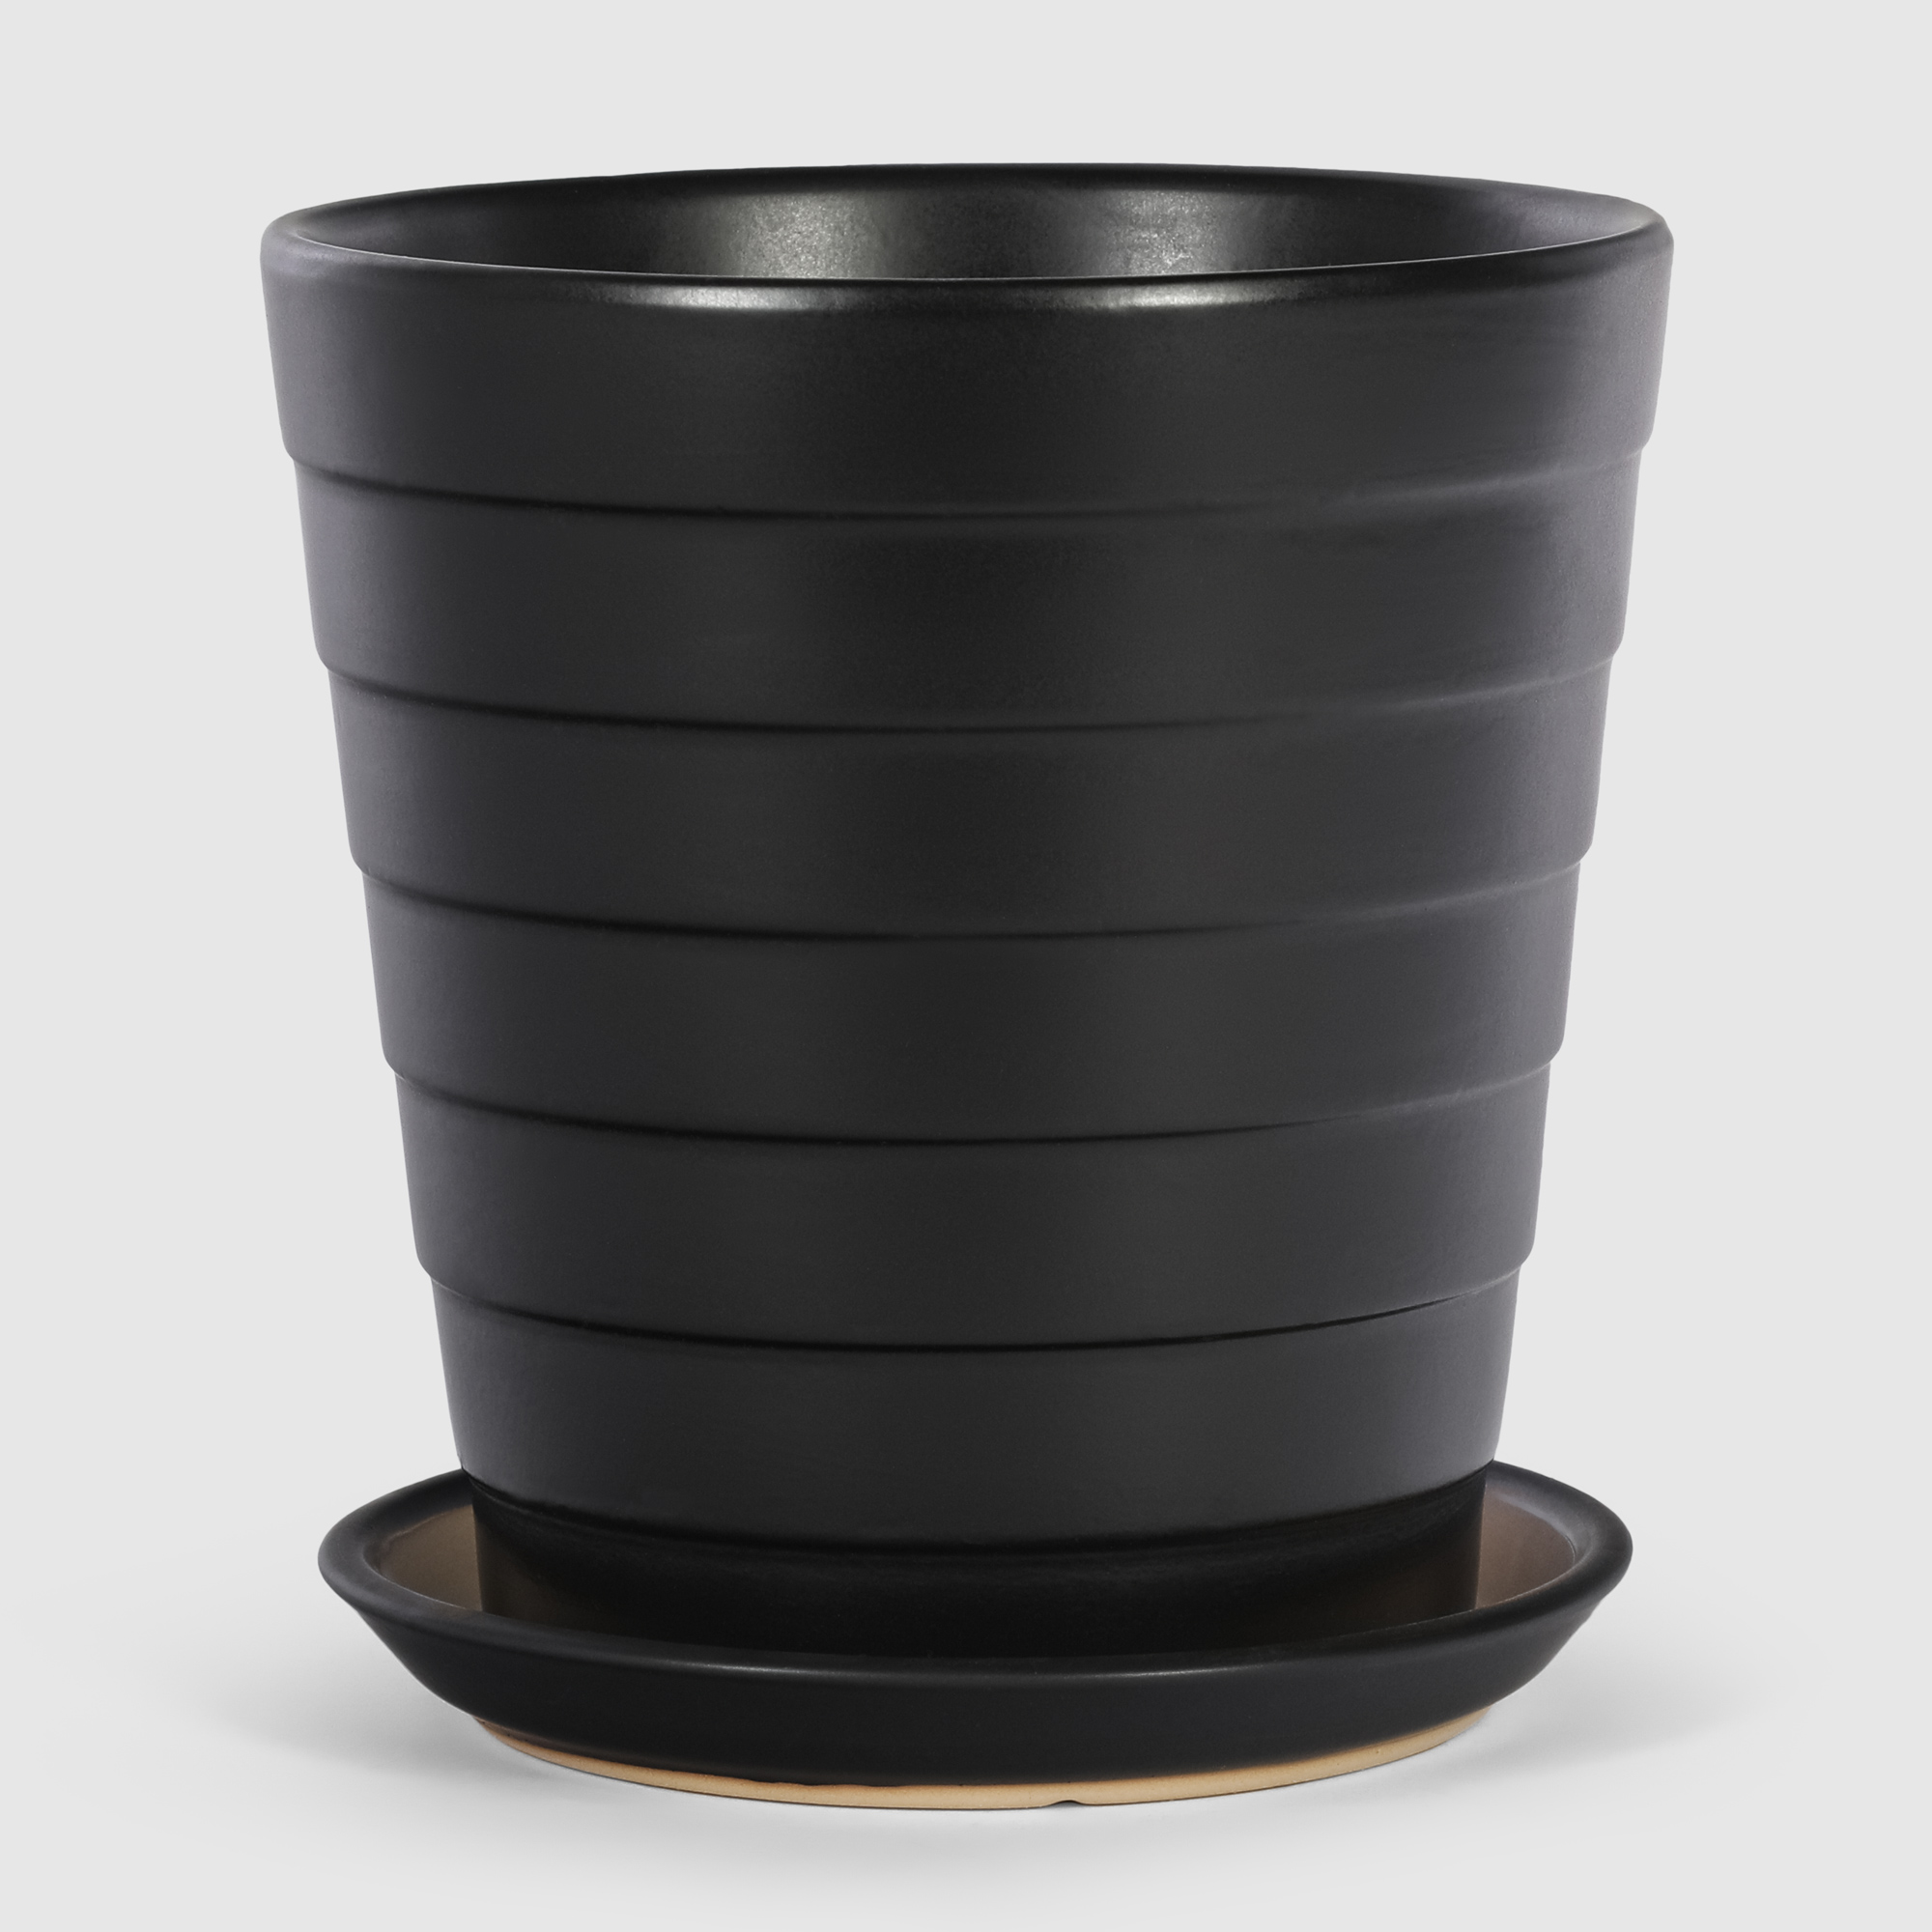 Кашпо керамическое для цветов Shine Pots 20x20см антрацит кашпо керамическое для ов shine pots 20x20см бежевое полосатое